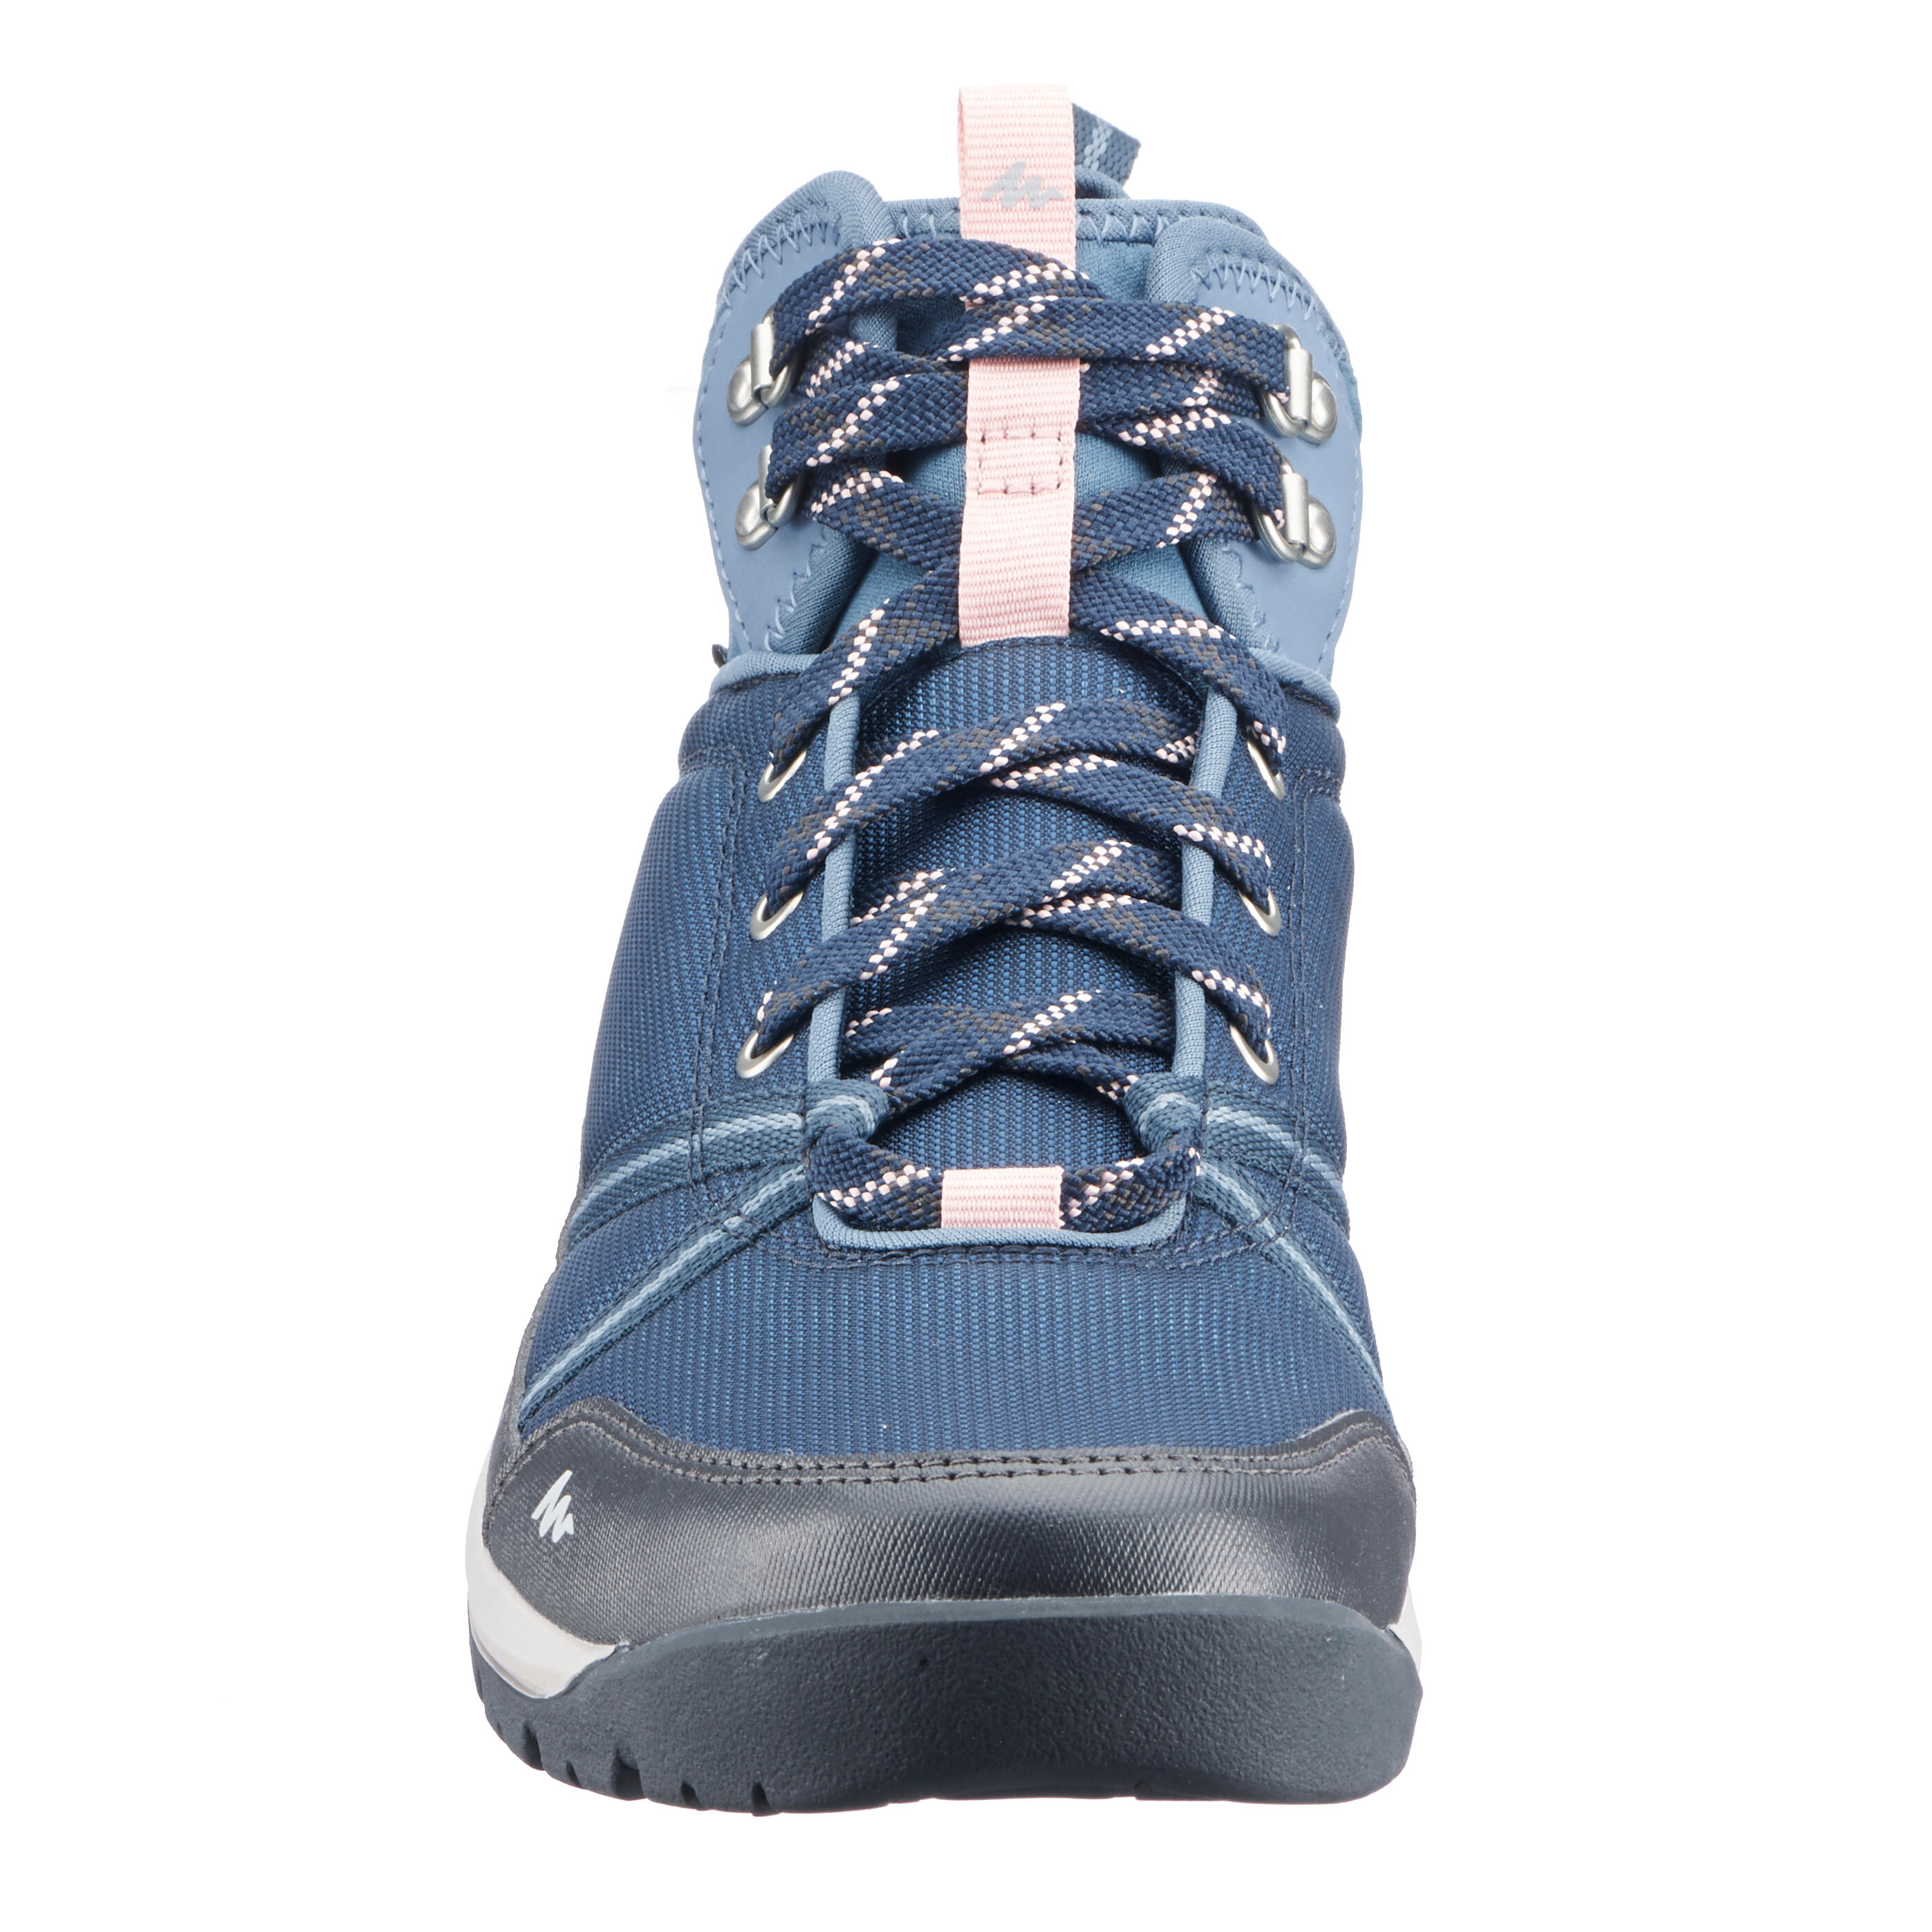 Women’s Waterproof Hiking Boots - NH 150 - QUECHUA